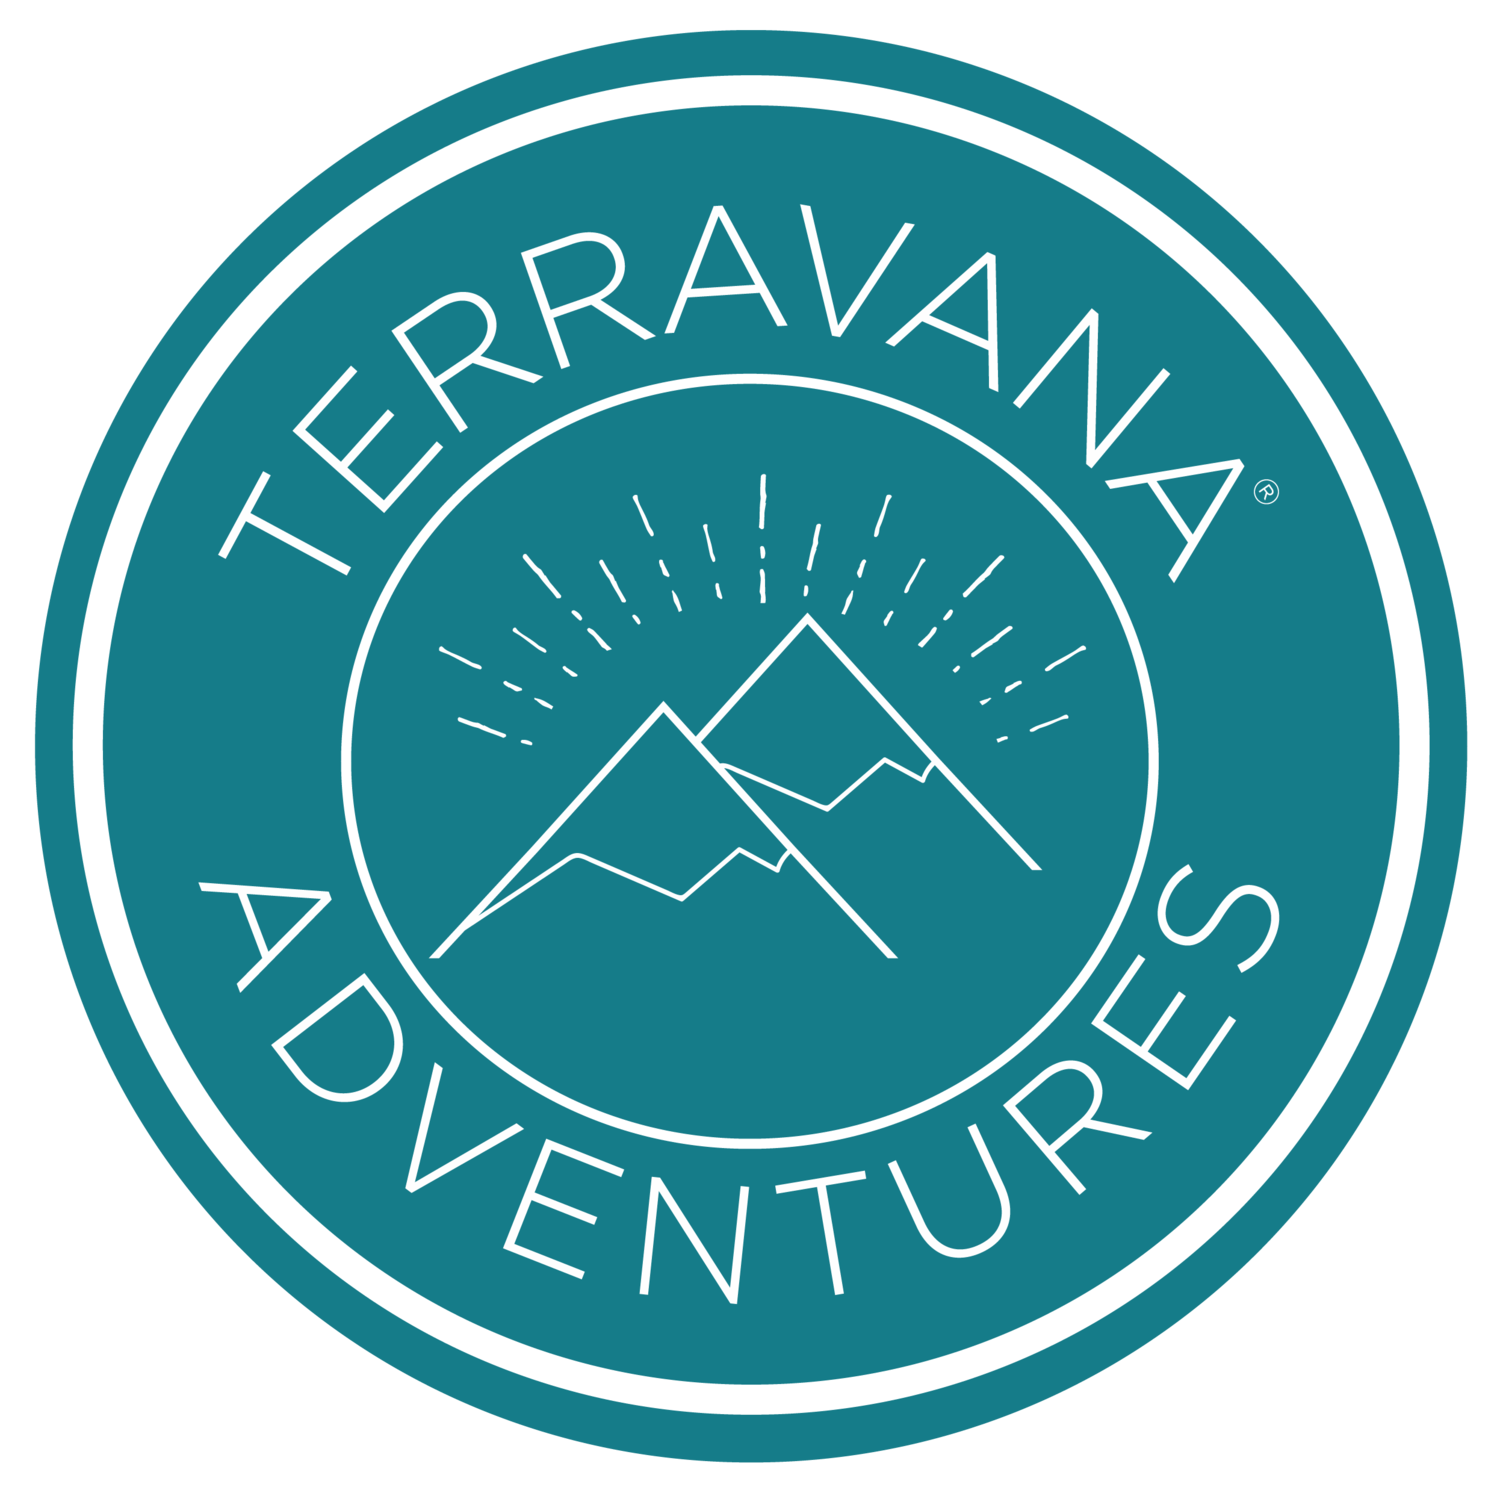 Terravana Adventures